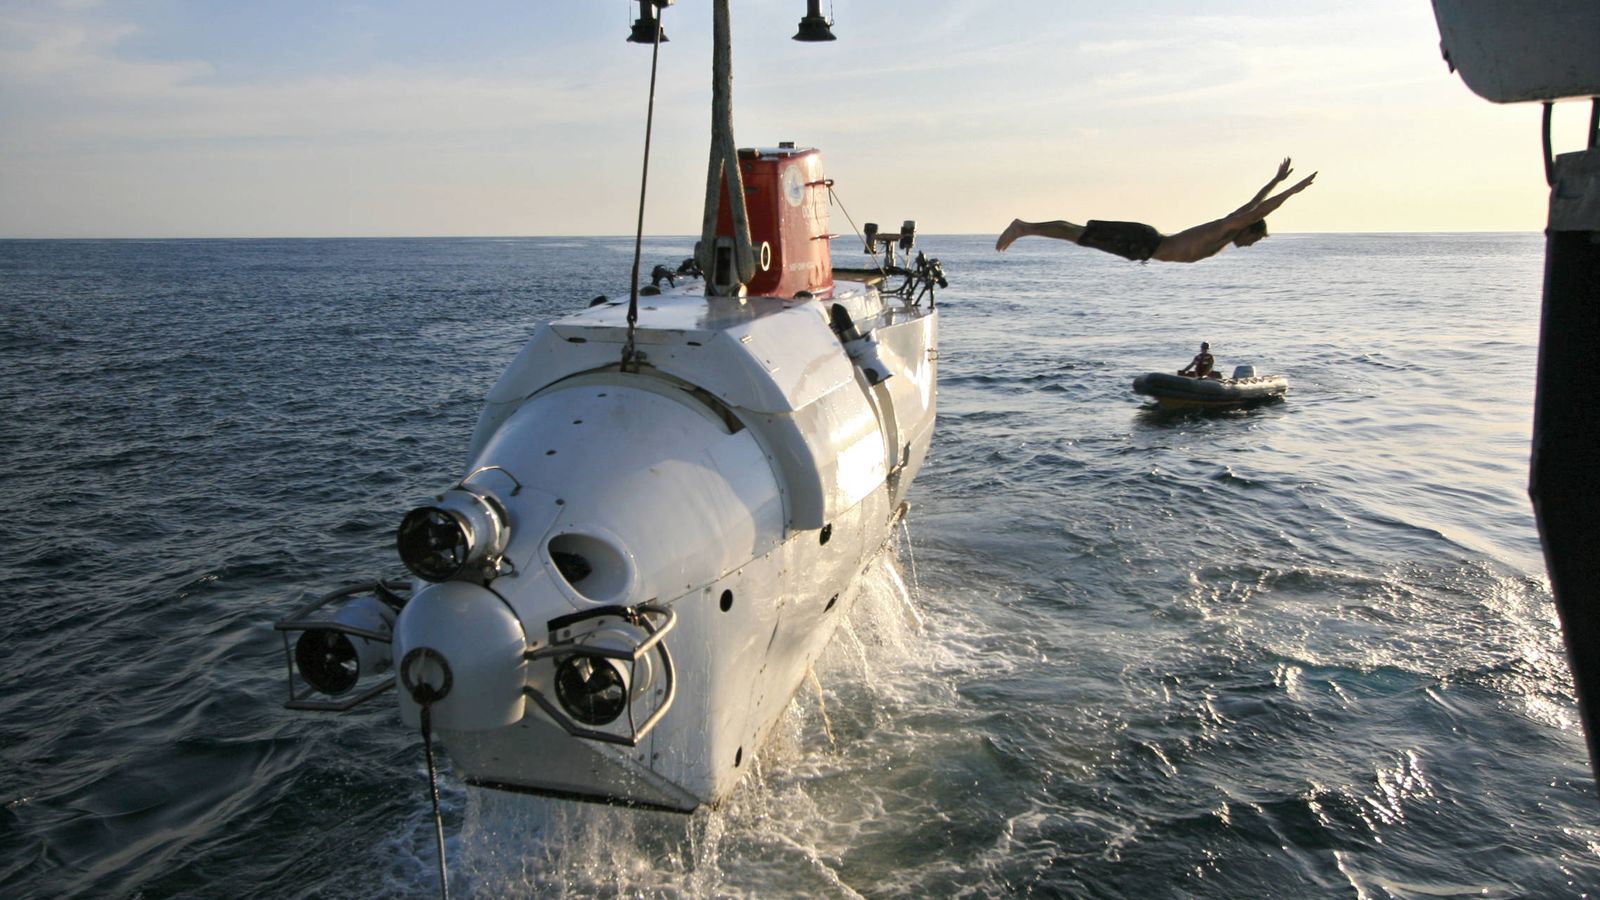 Foto: Uno de los tripulantes de Alvin, un sumergible tripulado para la investigación oceánica profunda, se lanza al agua después de asegurar el submarino a su buque de soporte. (Lance Wills | Woods Hole Oceanographic Institution)